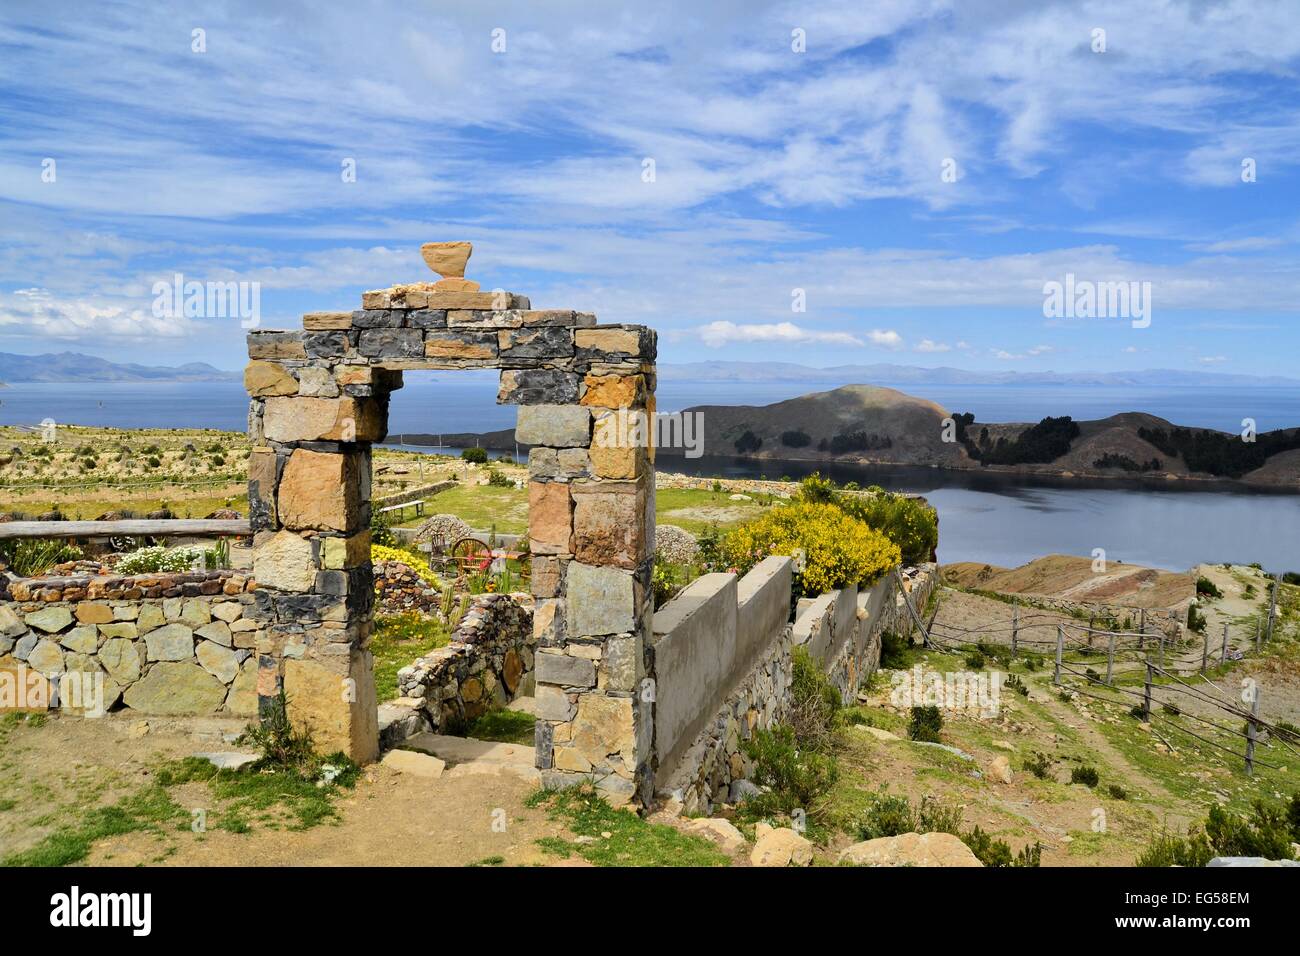 La porte de pierre sur les rives du lac Titicaca entre la Bolivie et le Pérou Banque D'Images